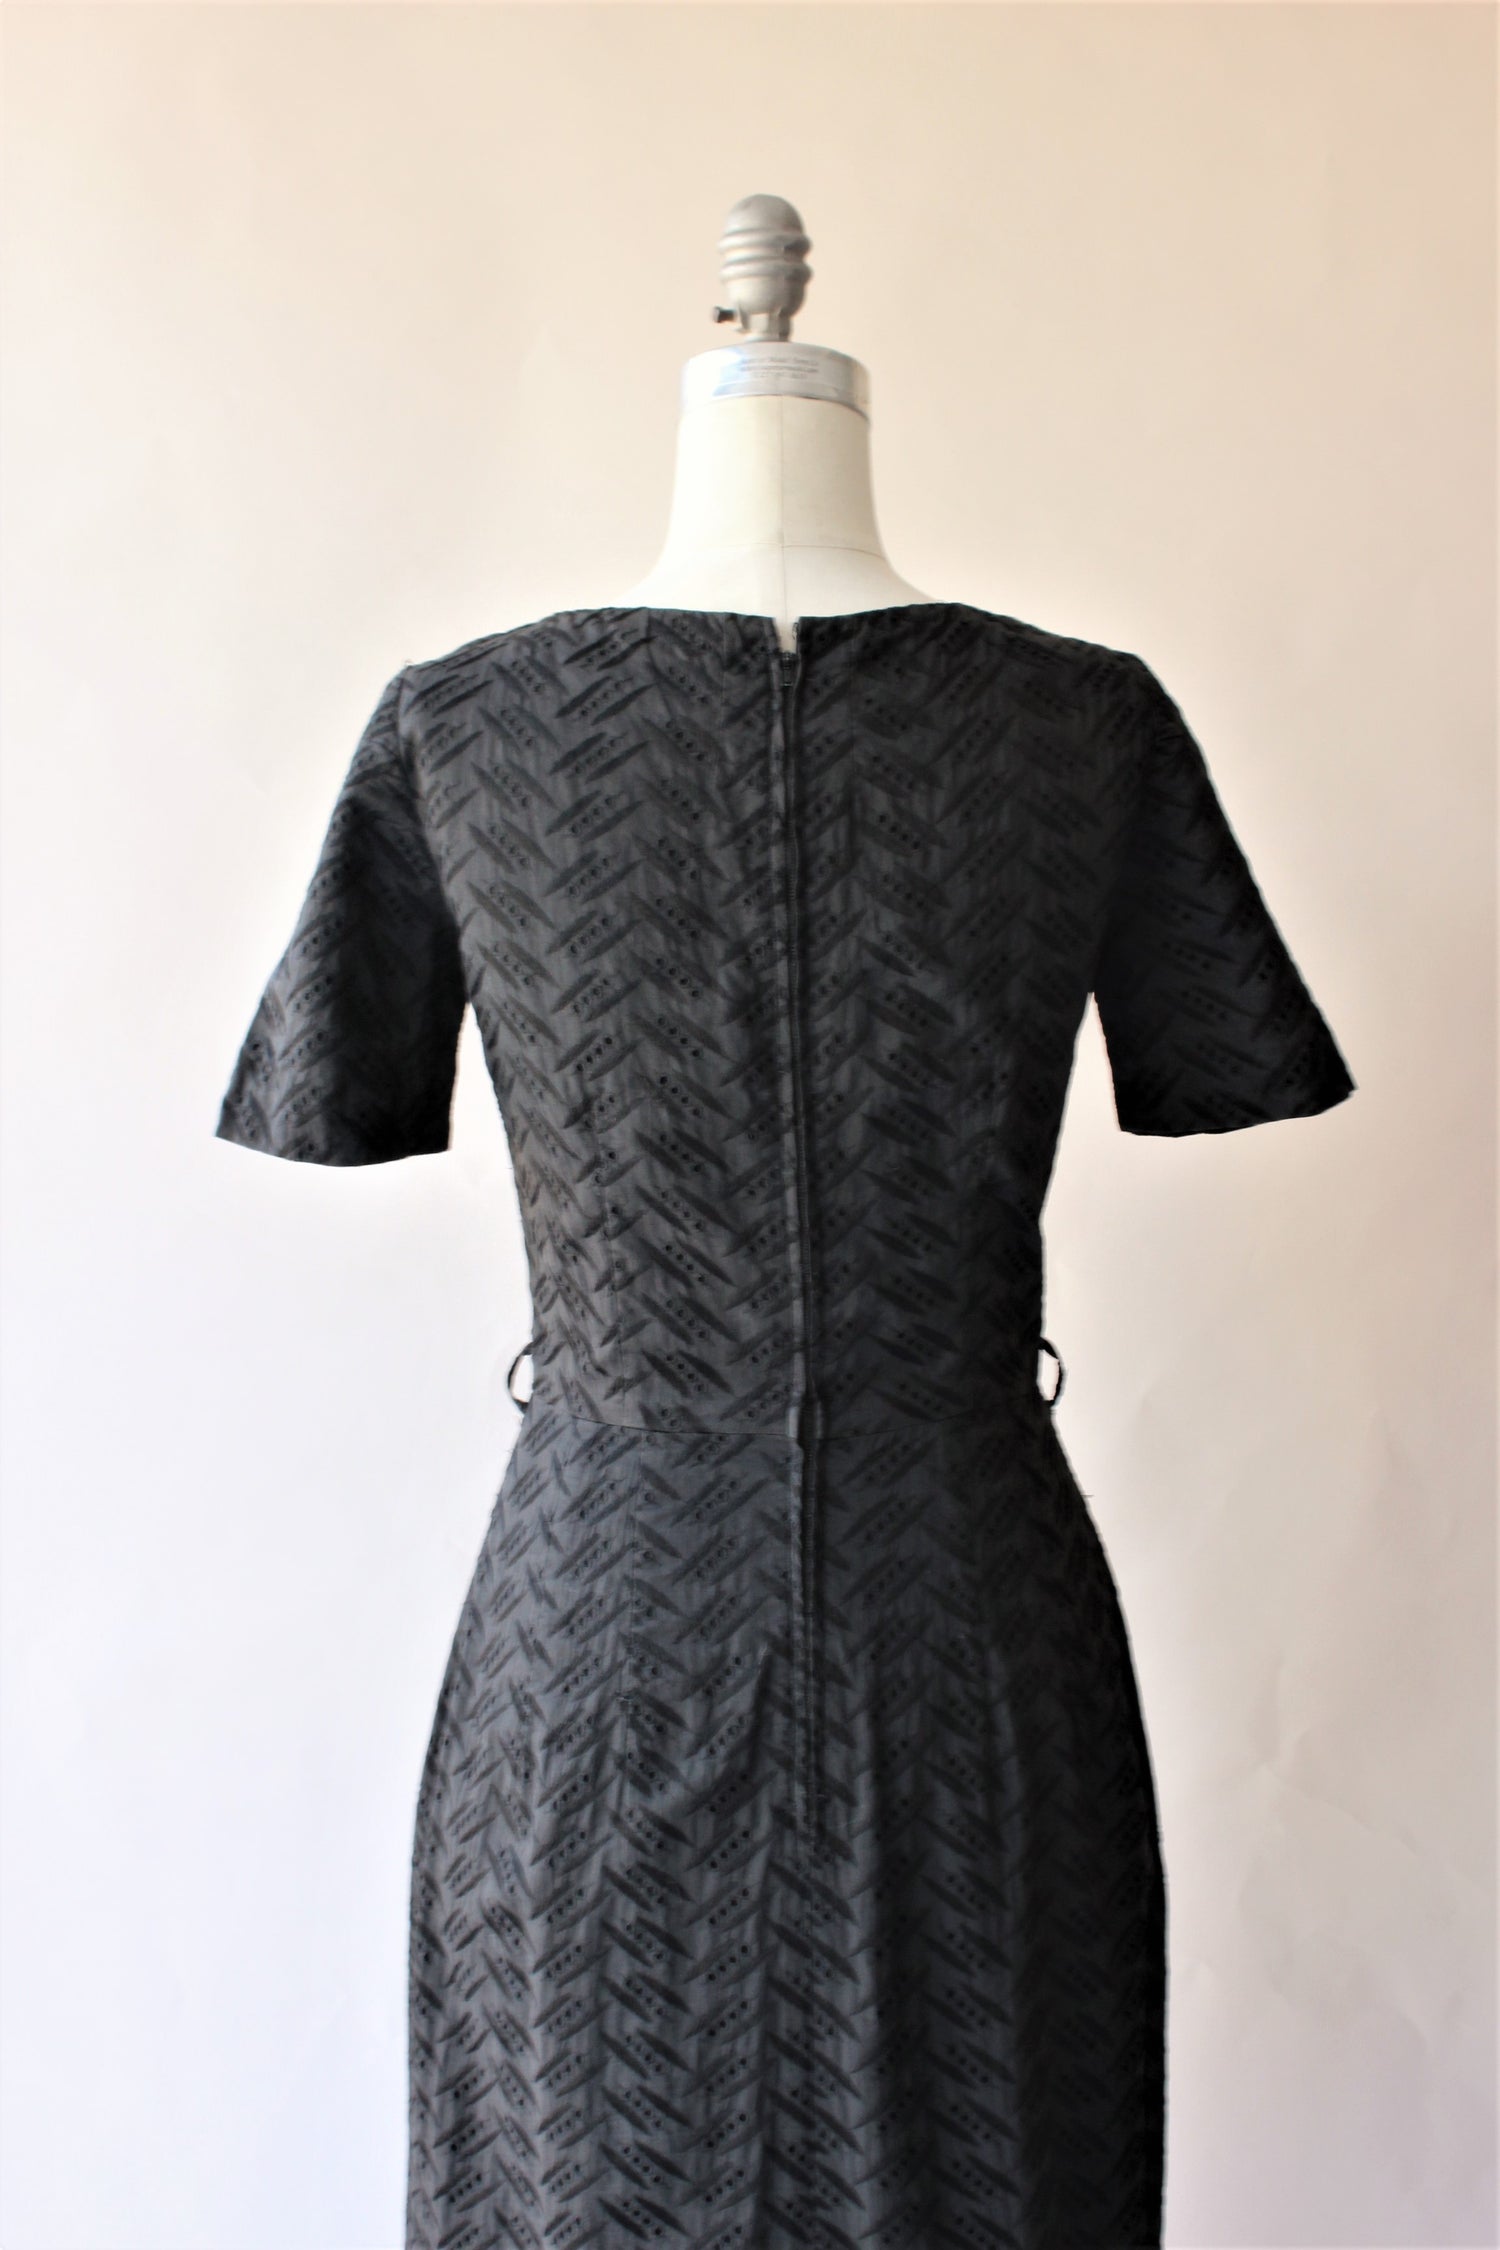 Vintage 1950s Black Eyelet Wiggle Dress